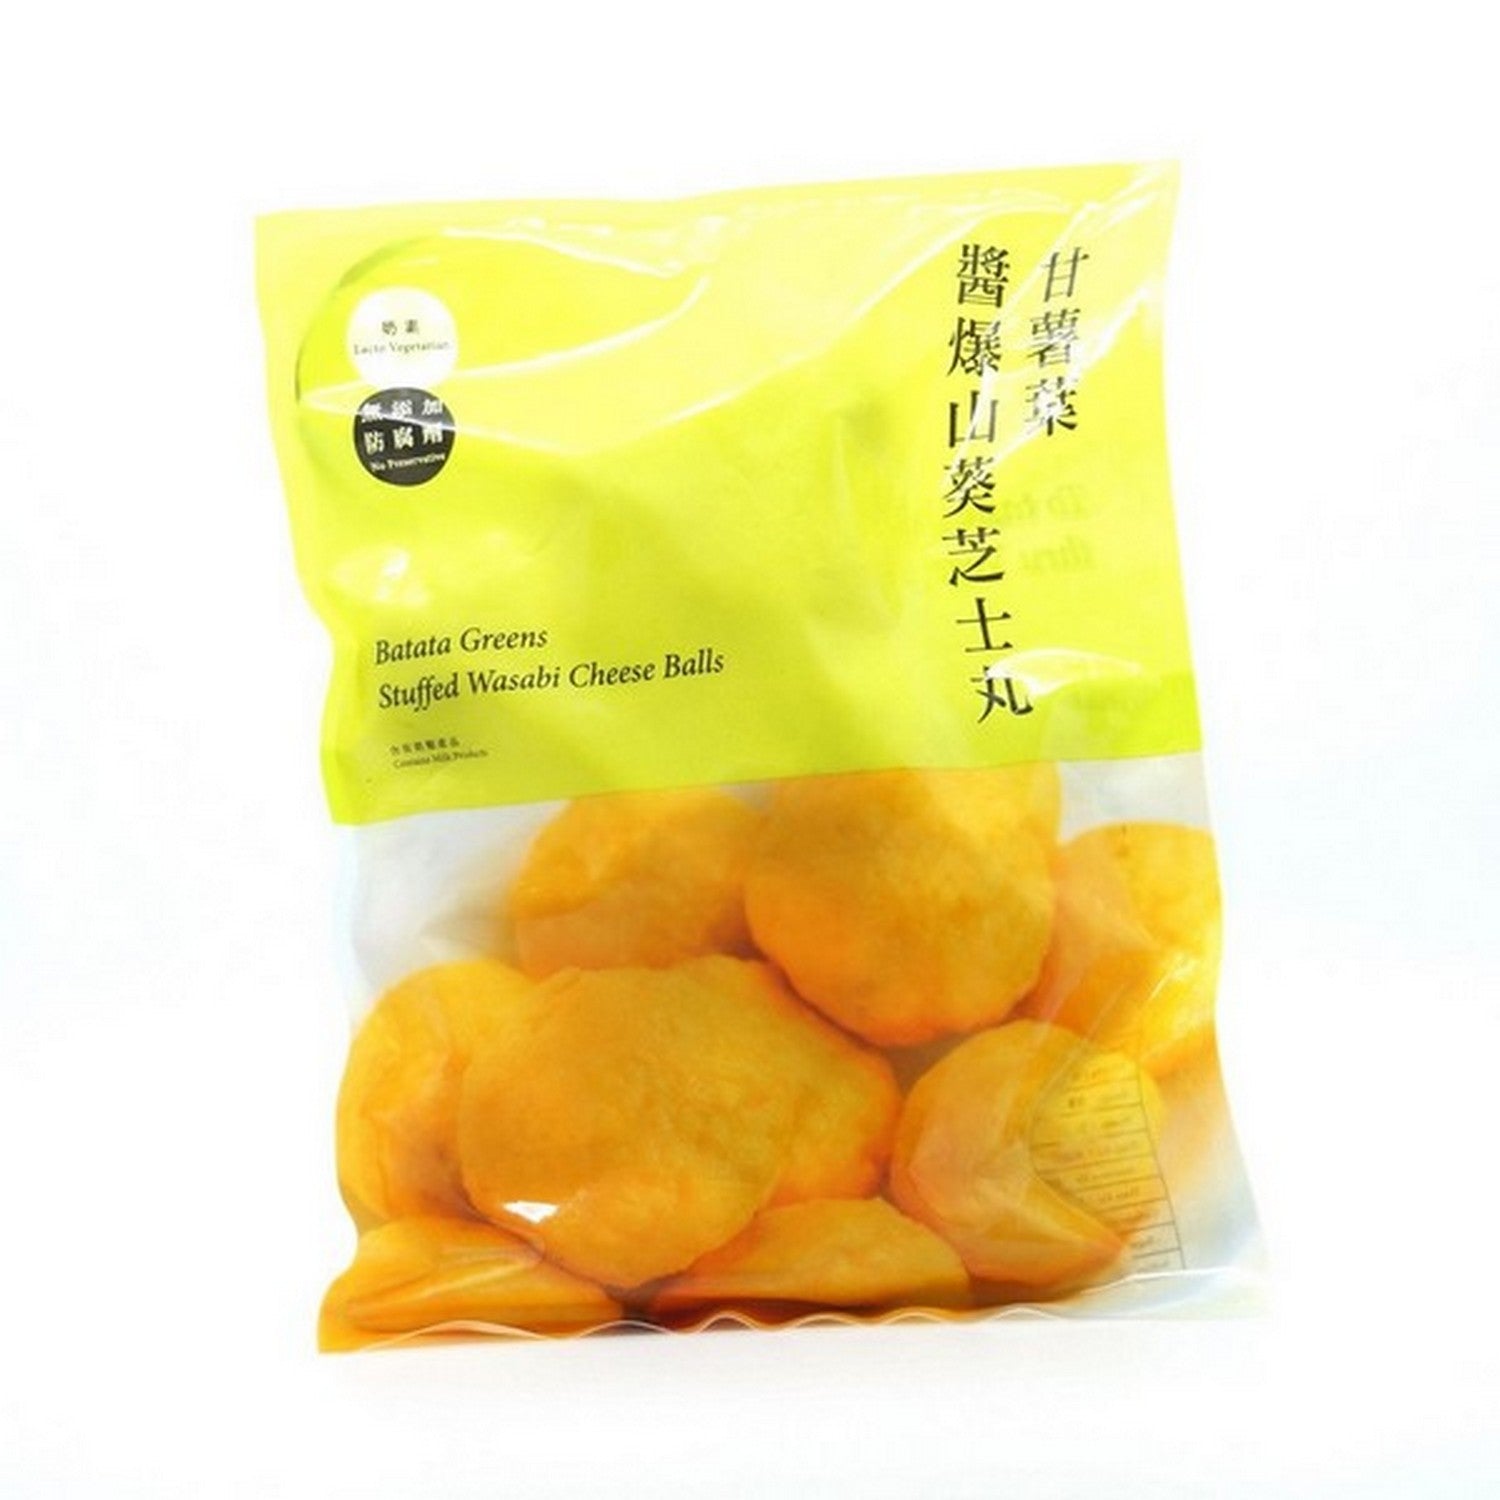 Taiwan Batata Greens Stuffed Wasabi Cheese Balls (300g)